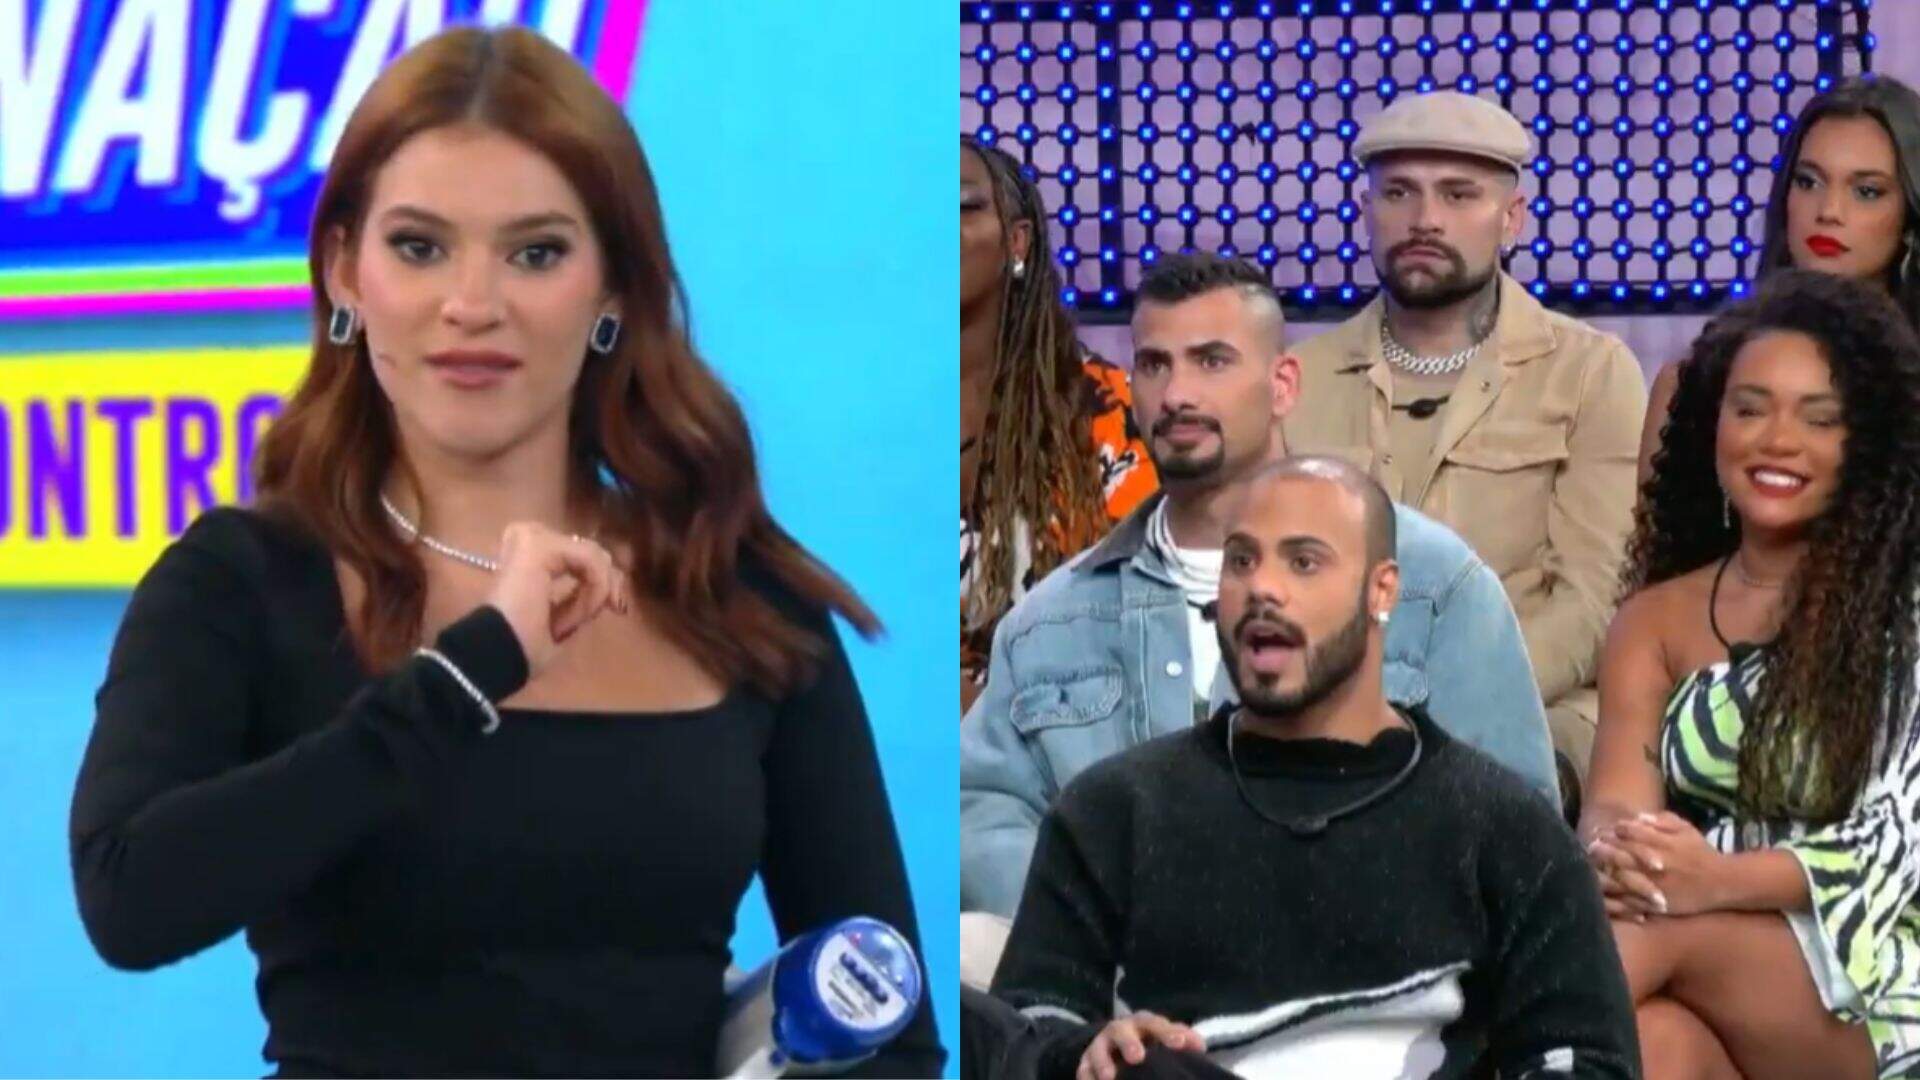 Ana Clara faz revelação sobre os bastidores do programa e surpreende brothers - Metropolitana FM